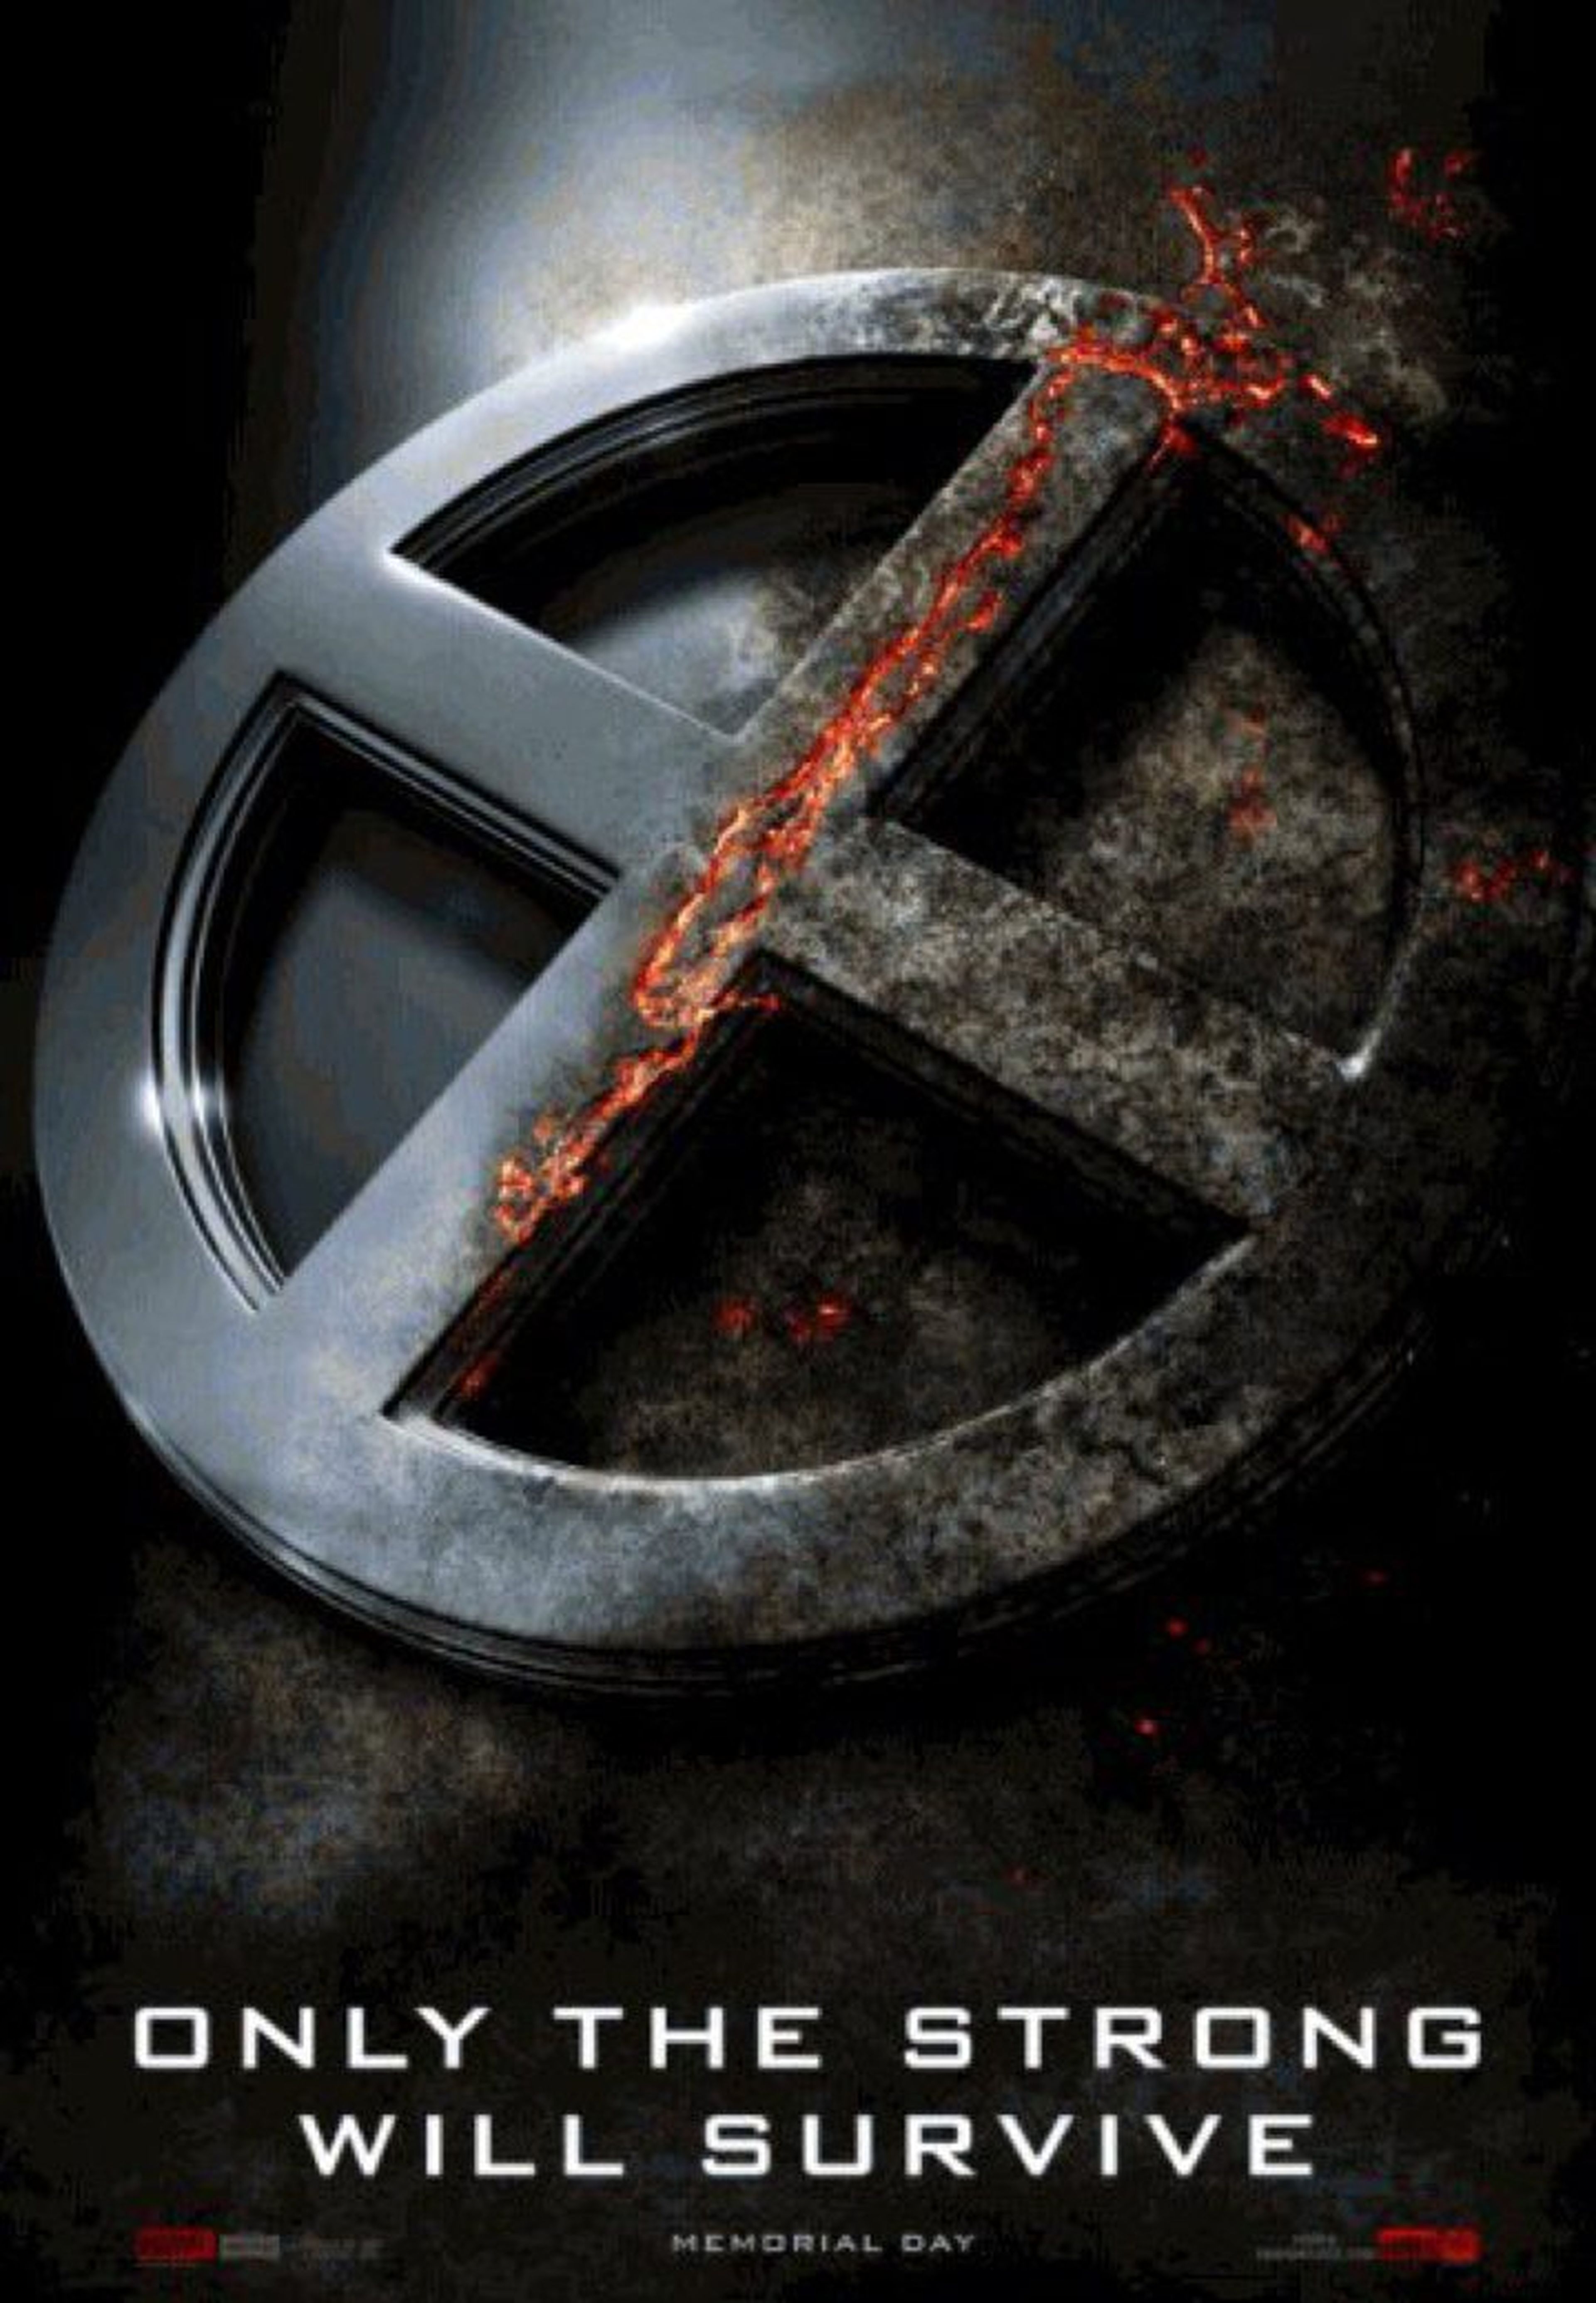 X-Men: Apocalipsis estrena cartel y marca fecha de estreno del tráiler